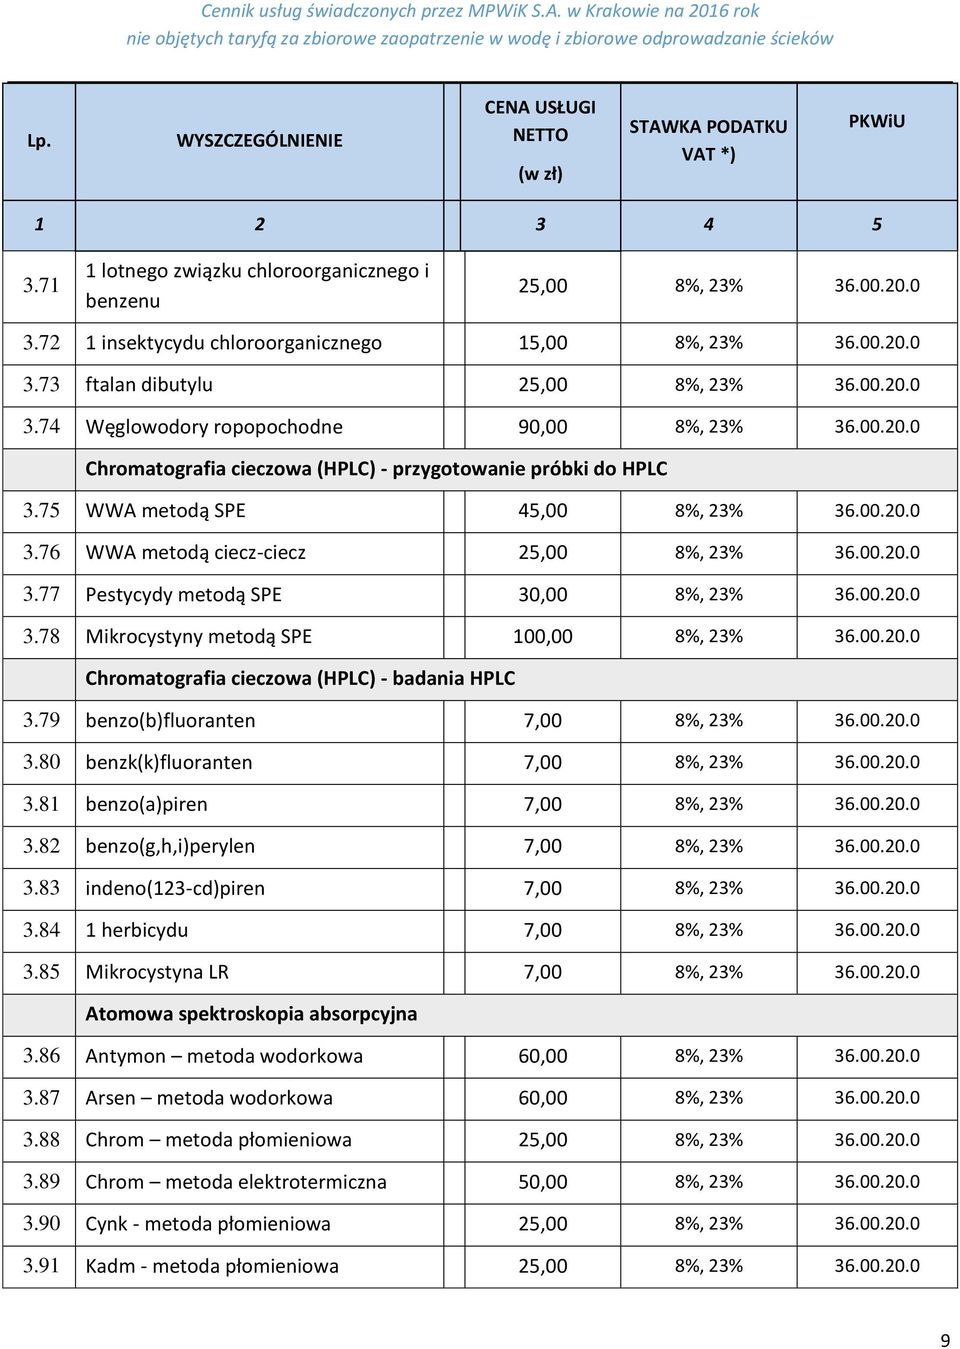 00.20.0 3.78 Mikrocystyny metodą SPE 100,00 8%, 23% 36.00.20.0 Chromatografia cieczowa (HPLC) - badania HPLC 3.79 benzo(b)fluoranten 7,00 8%, 23% 36.00.20.0 3.80 benzk(k)fluoranten 7,00 8%, 23% 36.00.20.0 3.81 benzo(a)piren 7,00 8%, 23% 36.